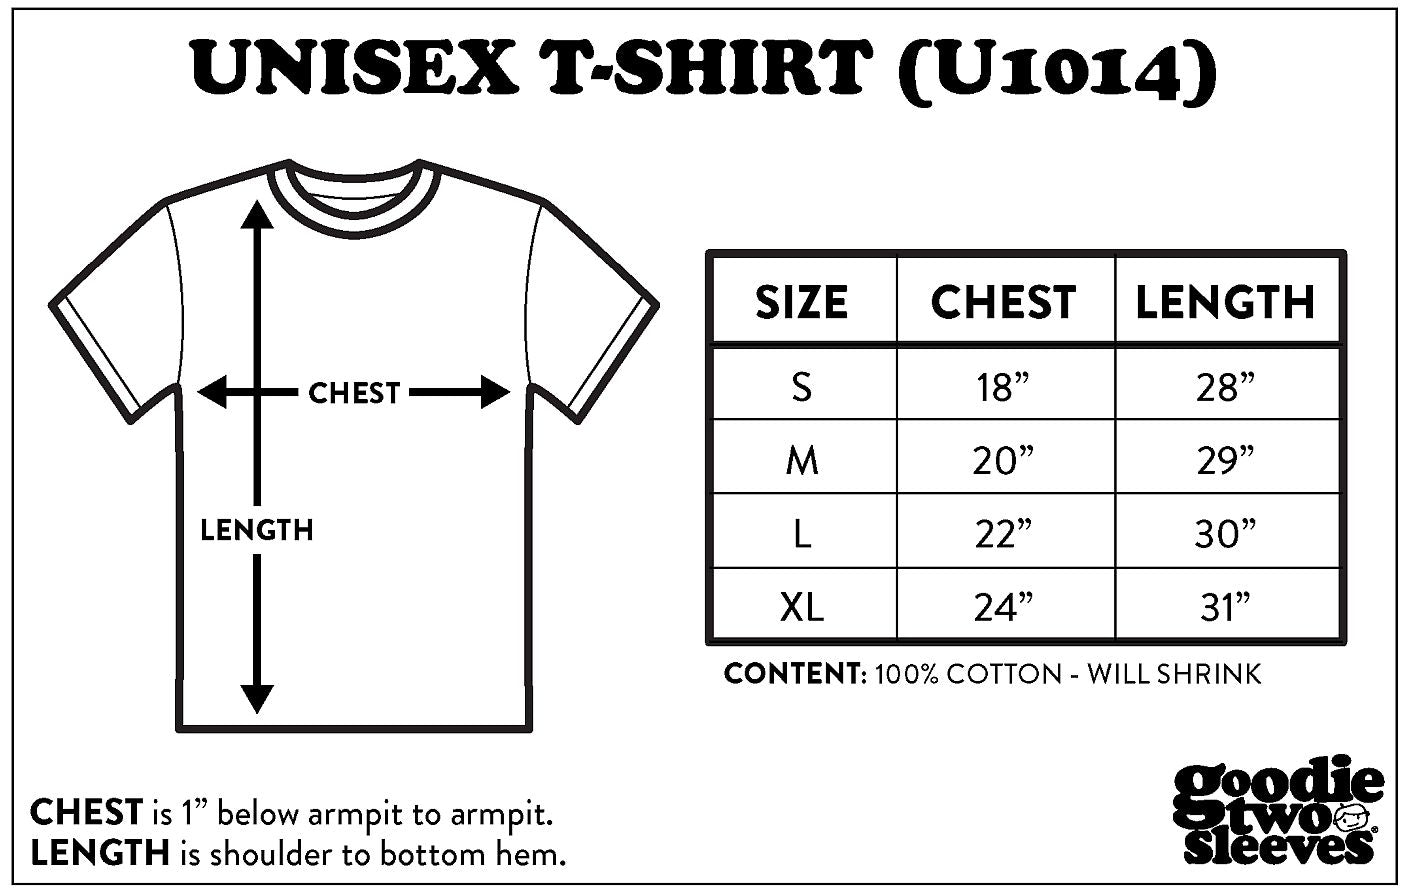 Jtr Racing Usa Motocross Racing Unisex T-Shirt